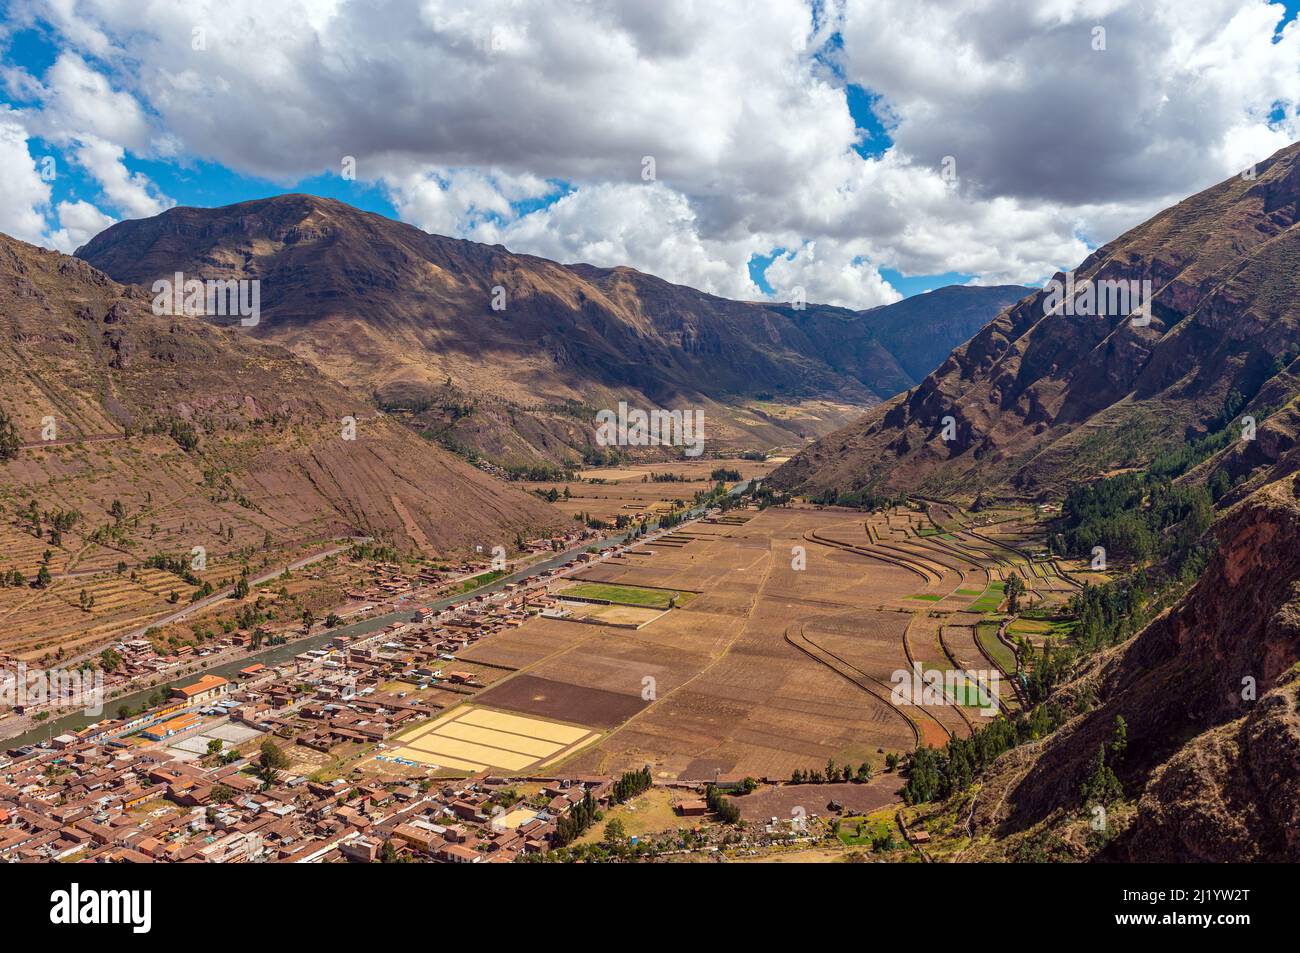 Paesaggio delle Ande montagne nella Valle Sacra degli Inca con il fiume Urubamba e Pisac villaggio, provincia di Cusco, Perù. Foto Stock